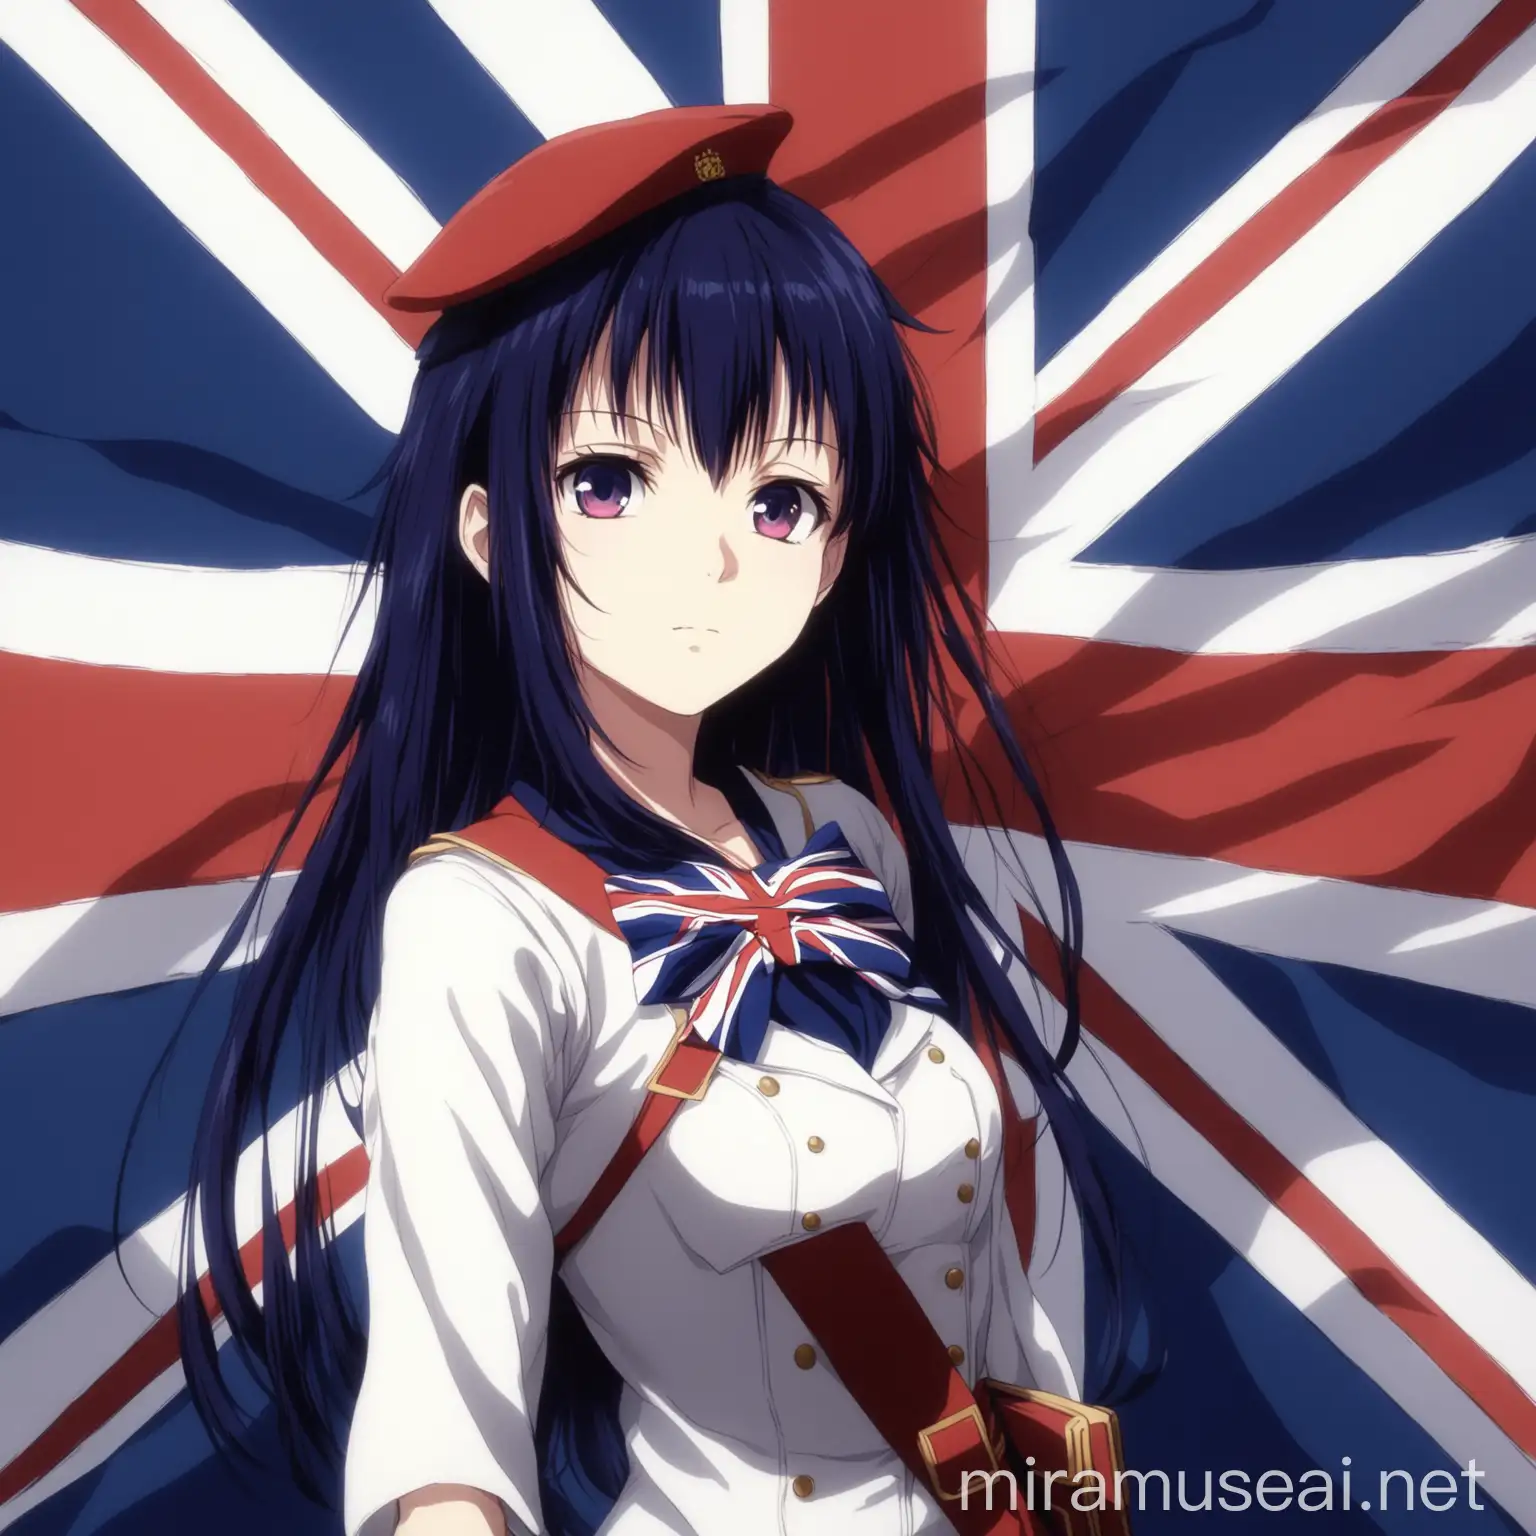 anime girl with british flag